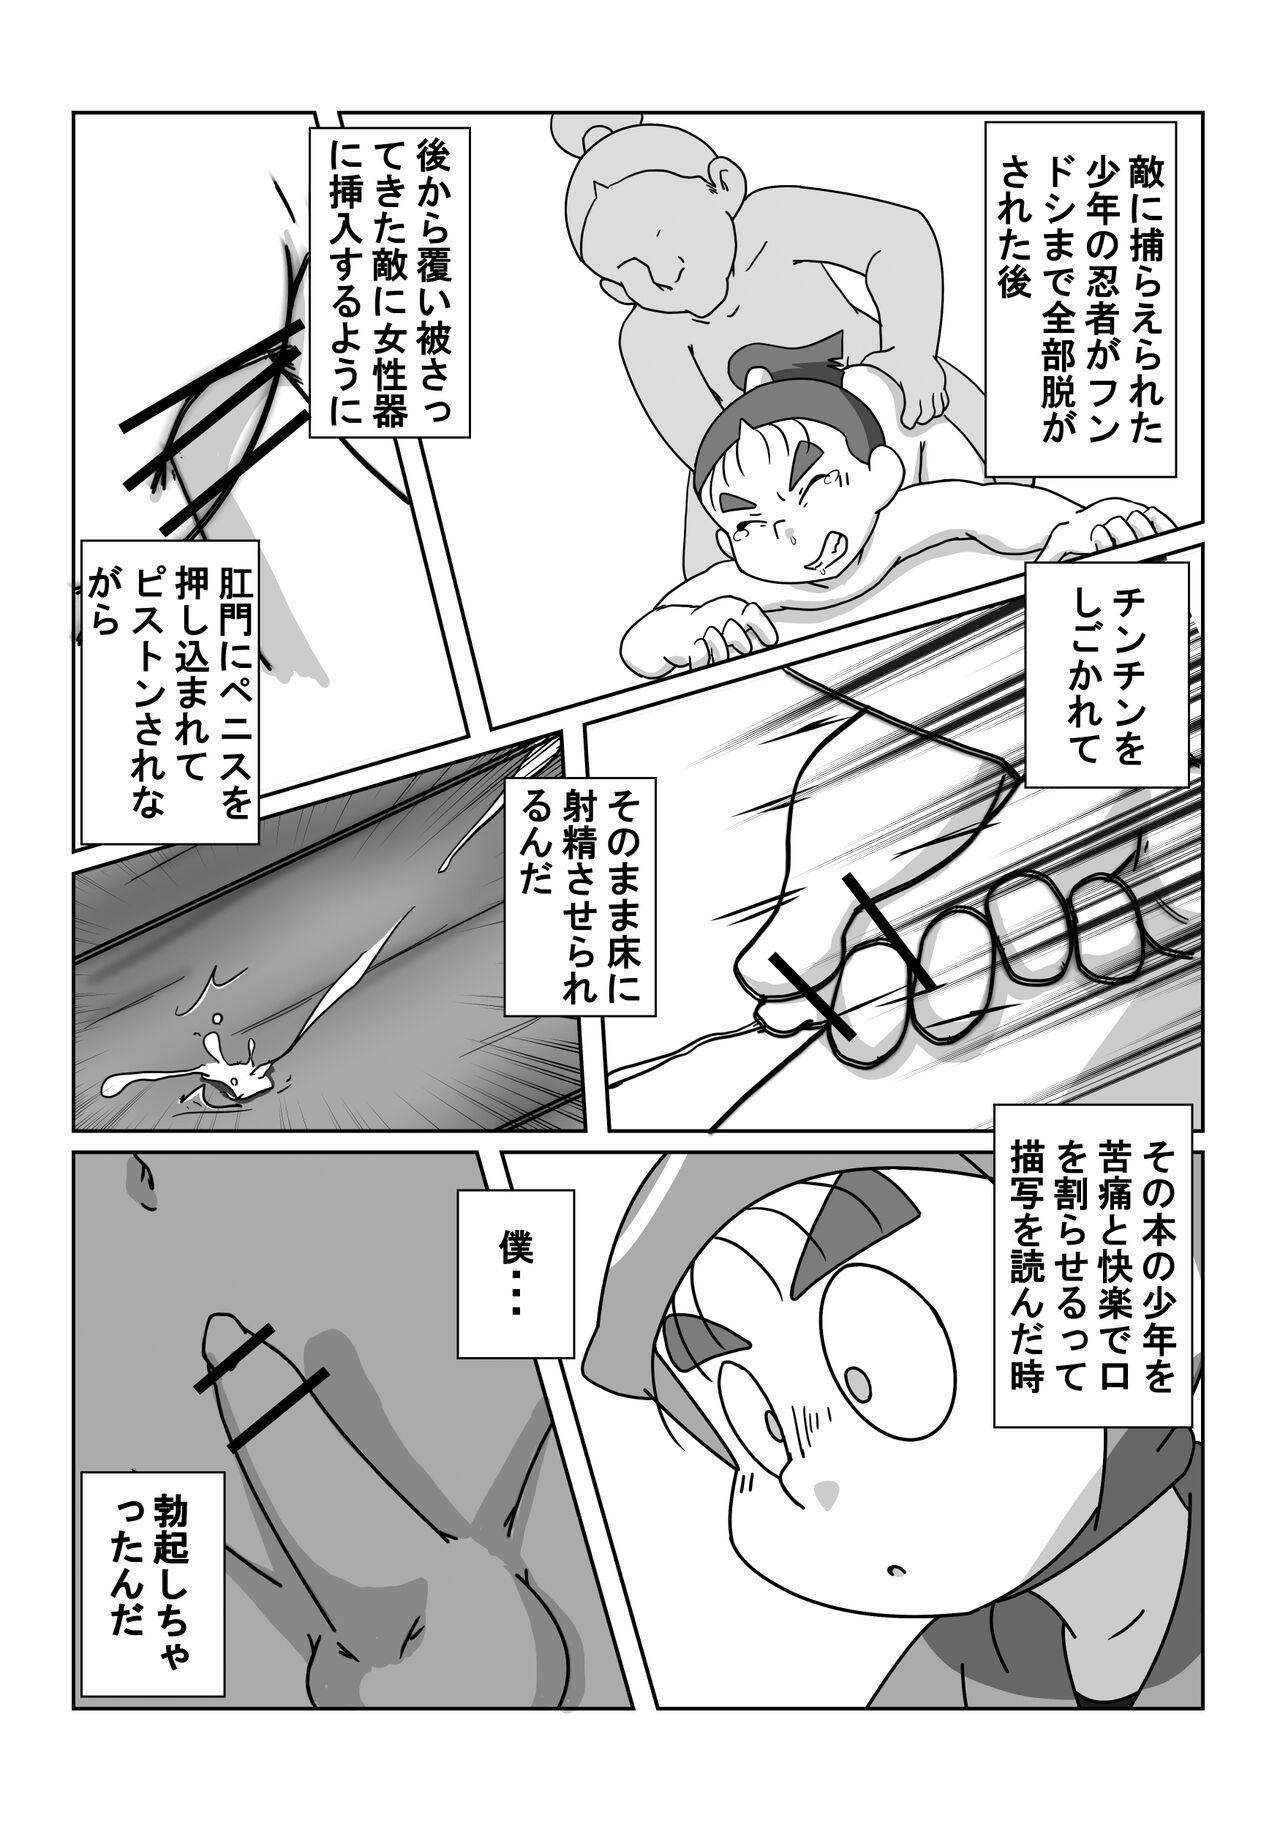 Squirting Ninjutsu Gakuen ni Bokutachi Futarikiri - Part 2 - Nintama rantarou Virtual - Page 10